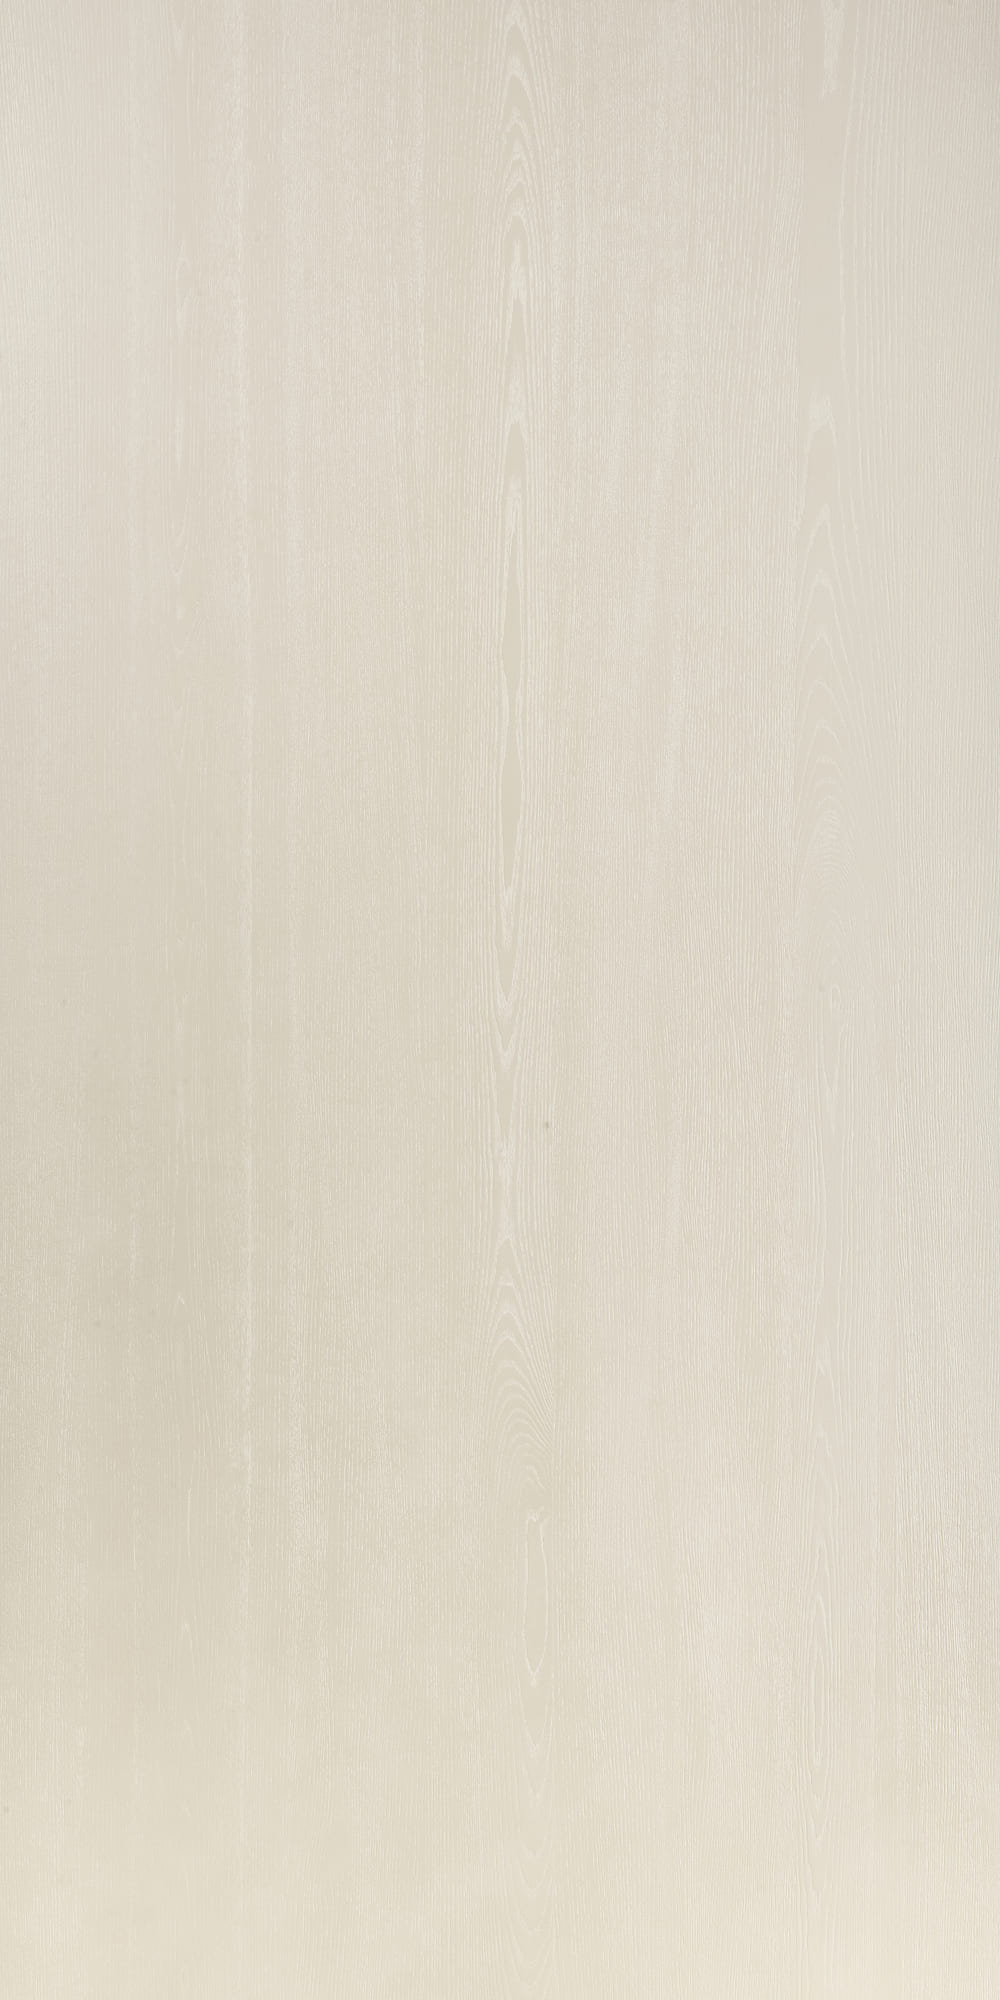 SJ-8154~1F 天然白橡木實木拼鋼刷塗裝板